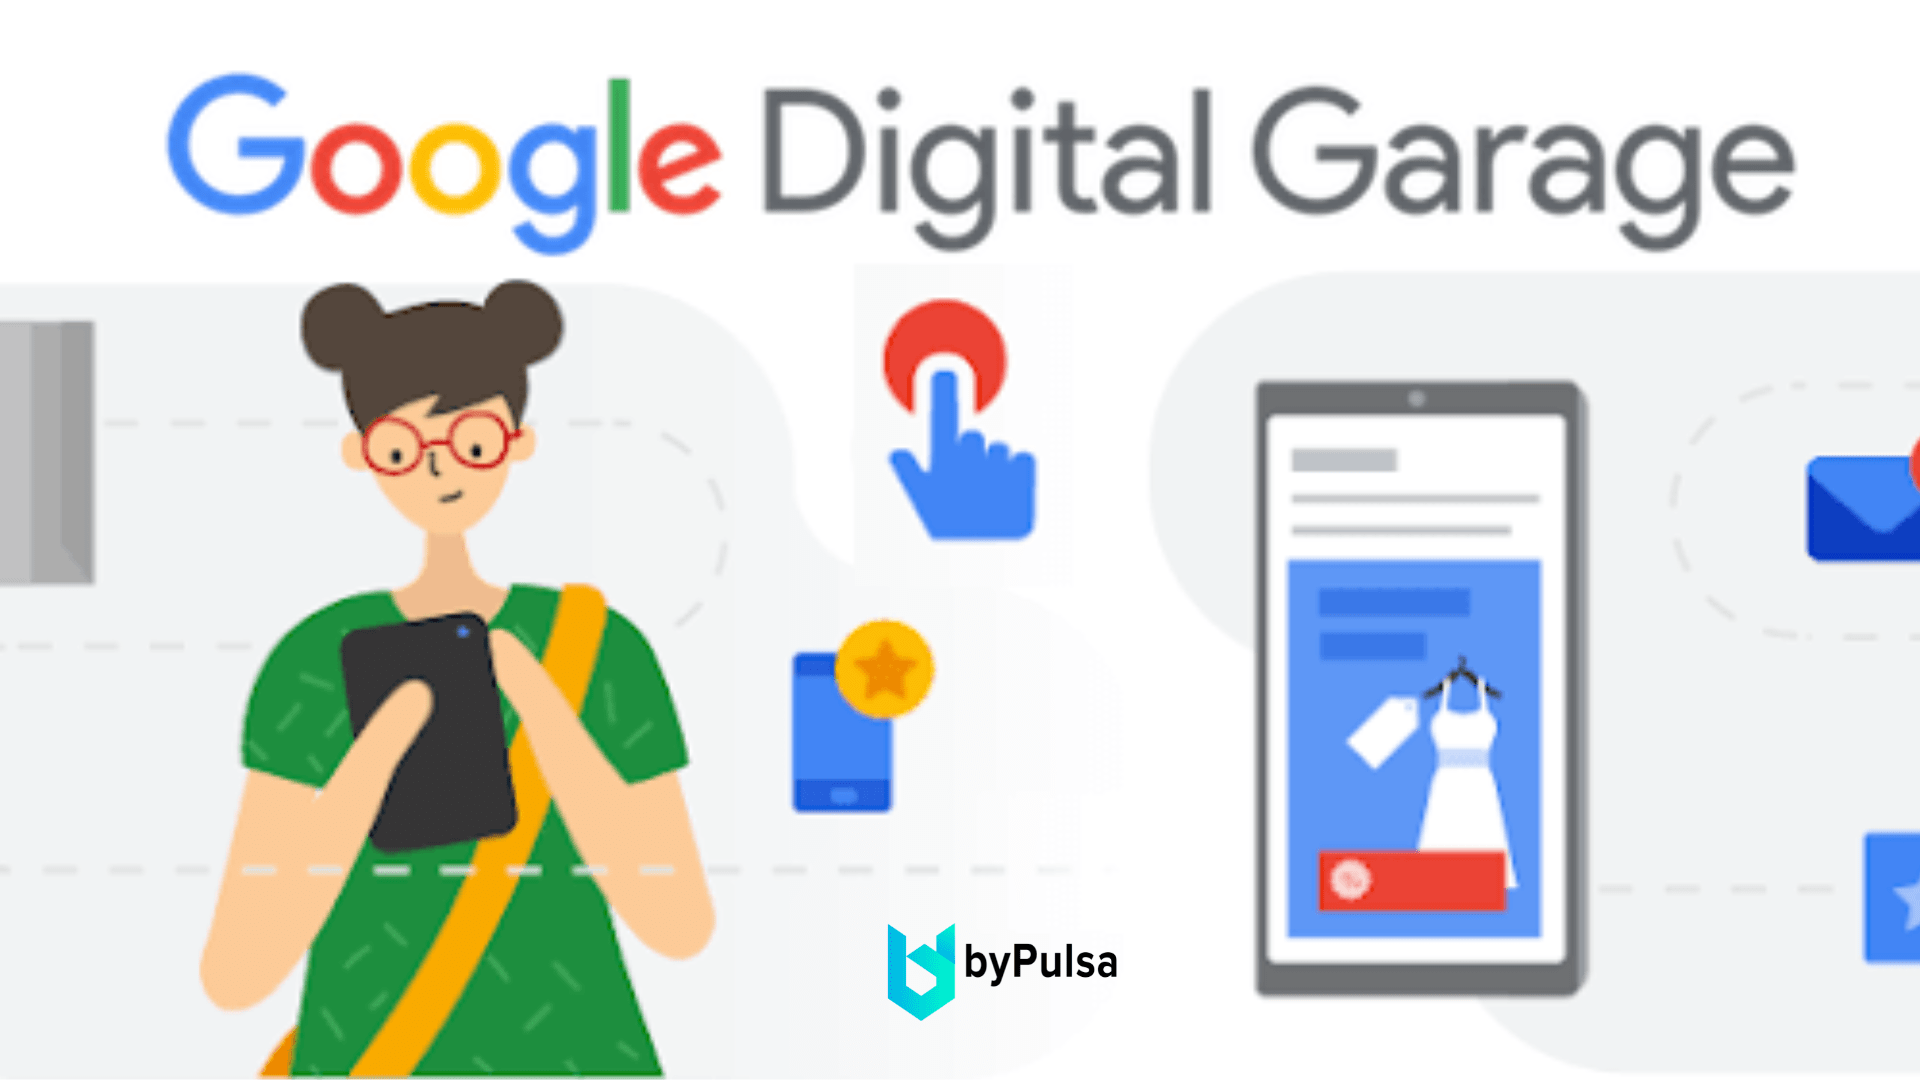 Situs untuk melakukan pengembangan diri yaitu Google Digital Garage dengan sertifikasi terakreditasi Google